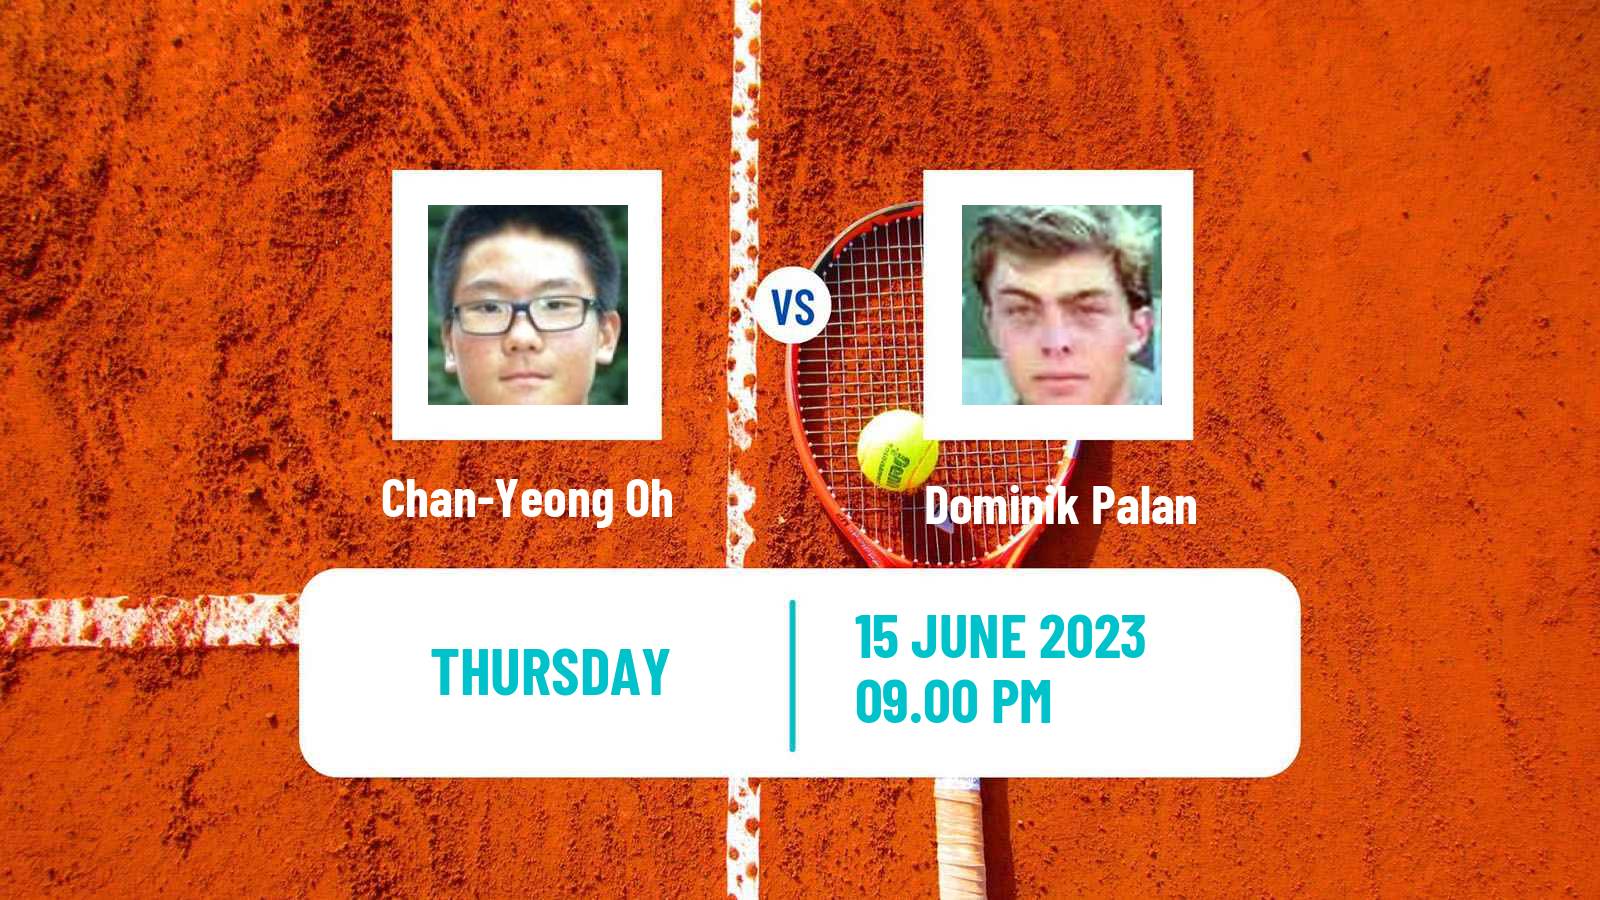 Tennis ITF M25 Changwon Men Chan-Yeong Oh - Dominik Palan